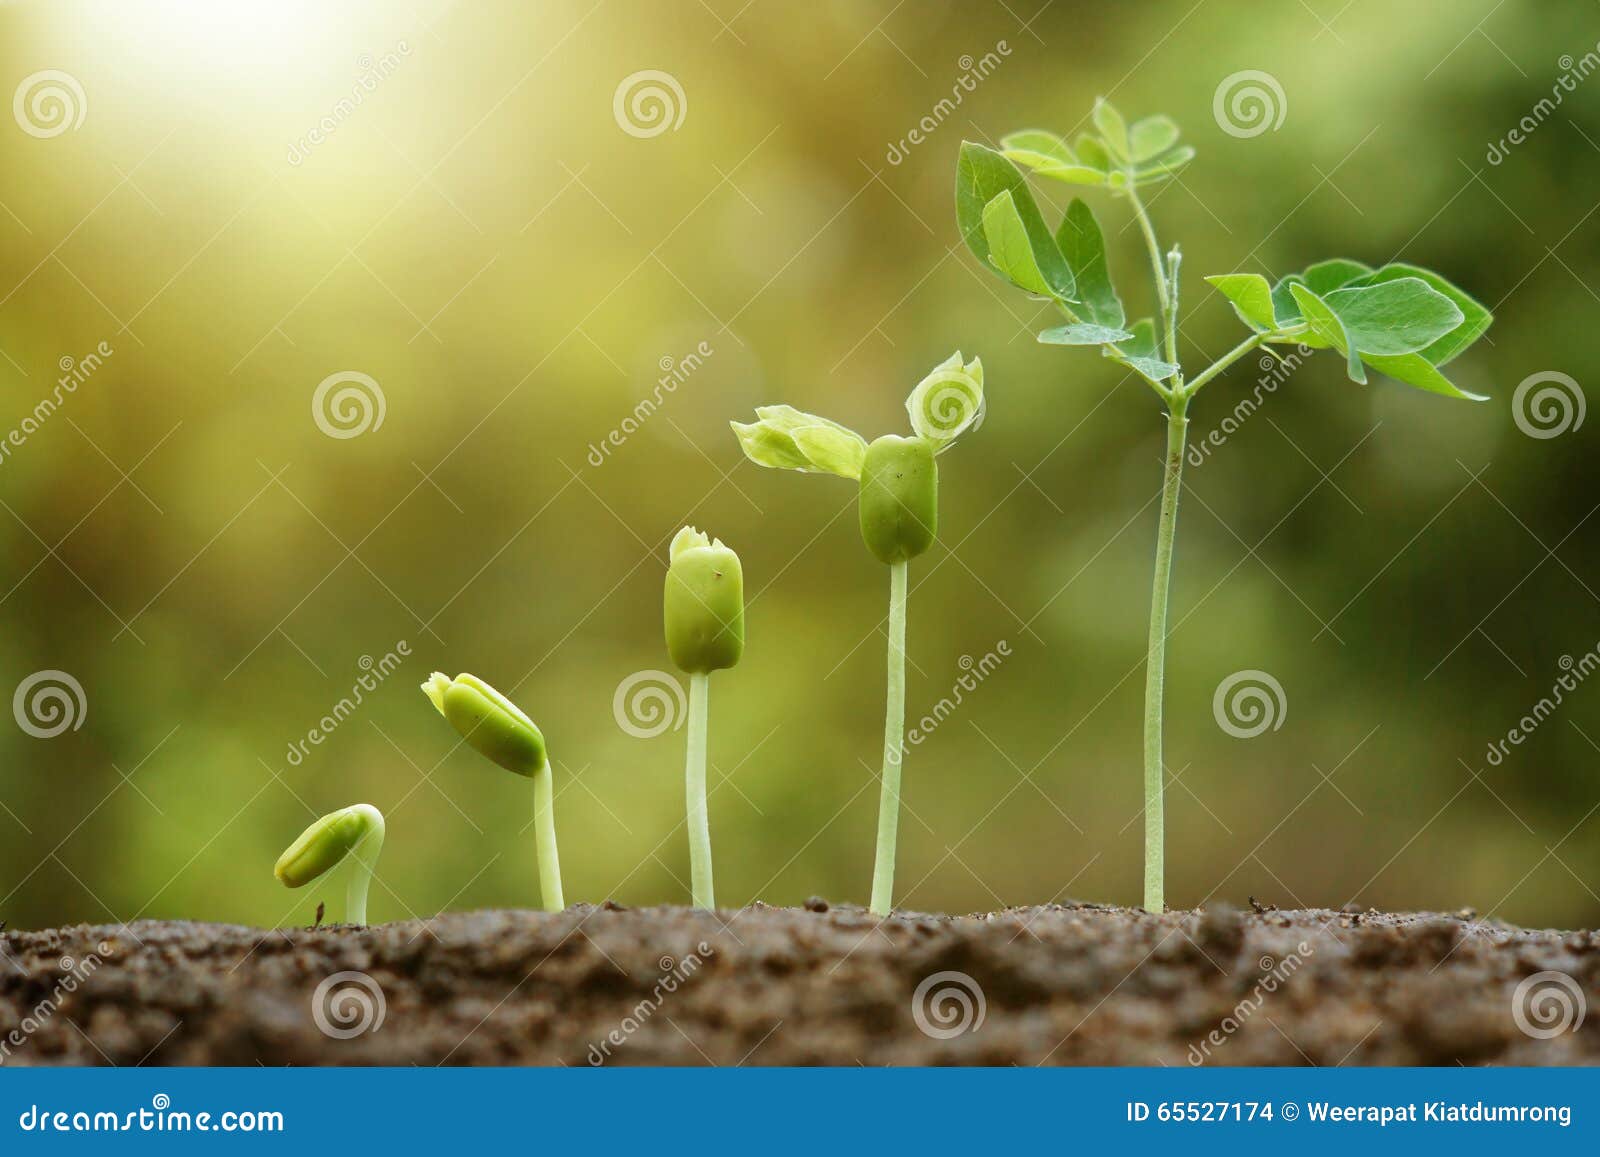 El bebé planta el almácigo. El bebé planta el crecimiento en secuencia de la germinación en suelo fértil con el fondo verde natural